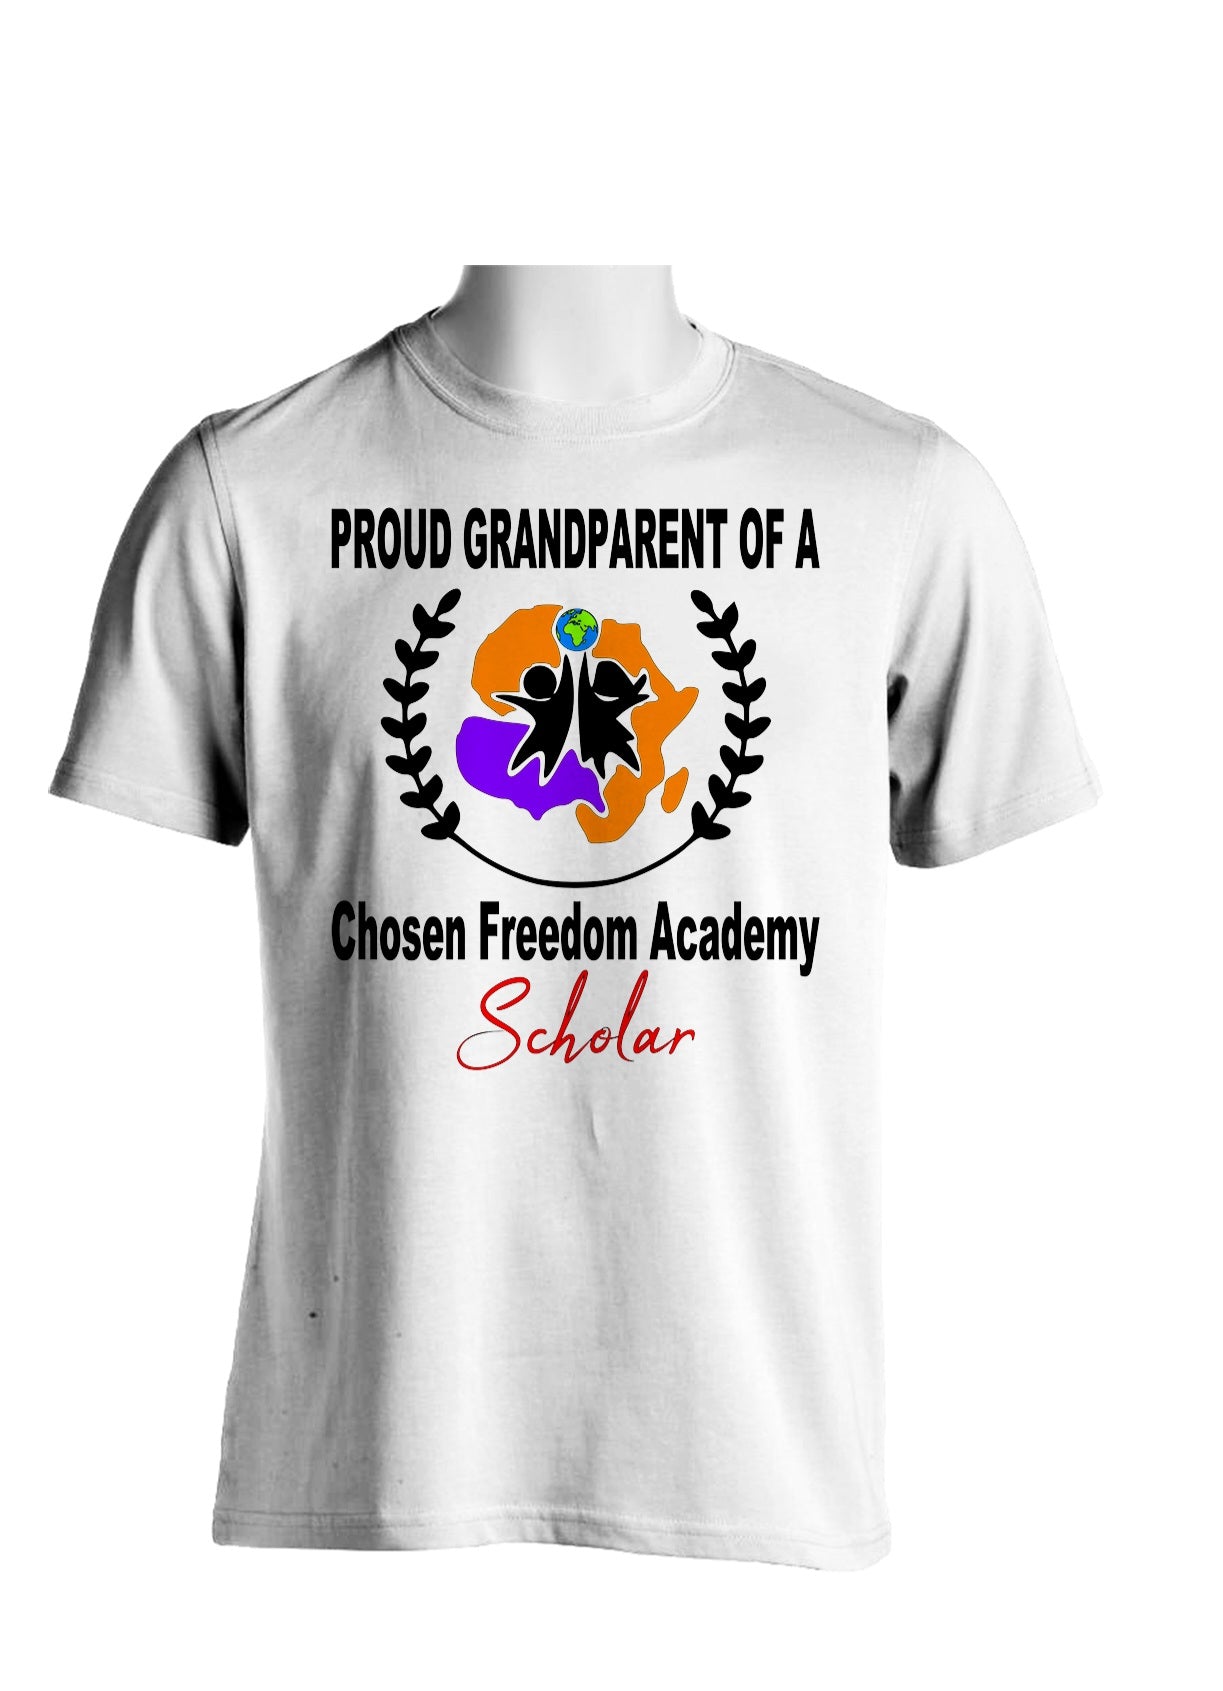 Proud Grandparent T-Shirt (Scholar)